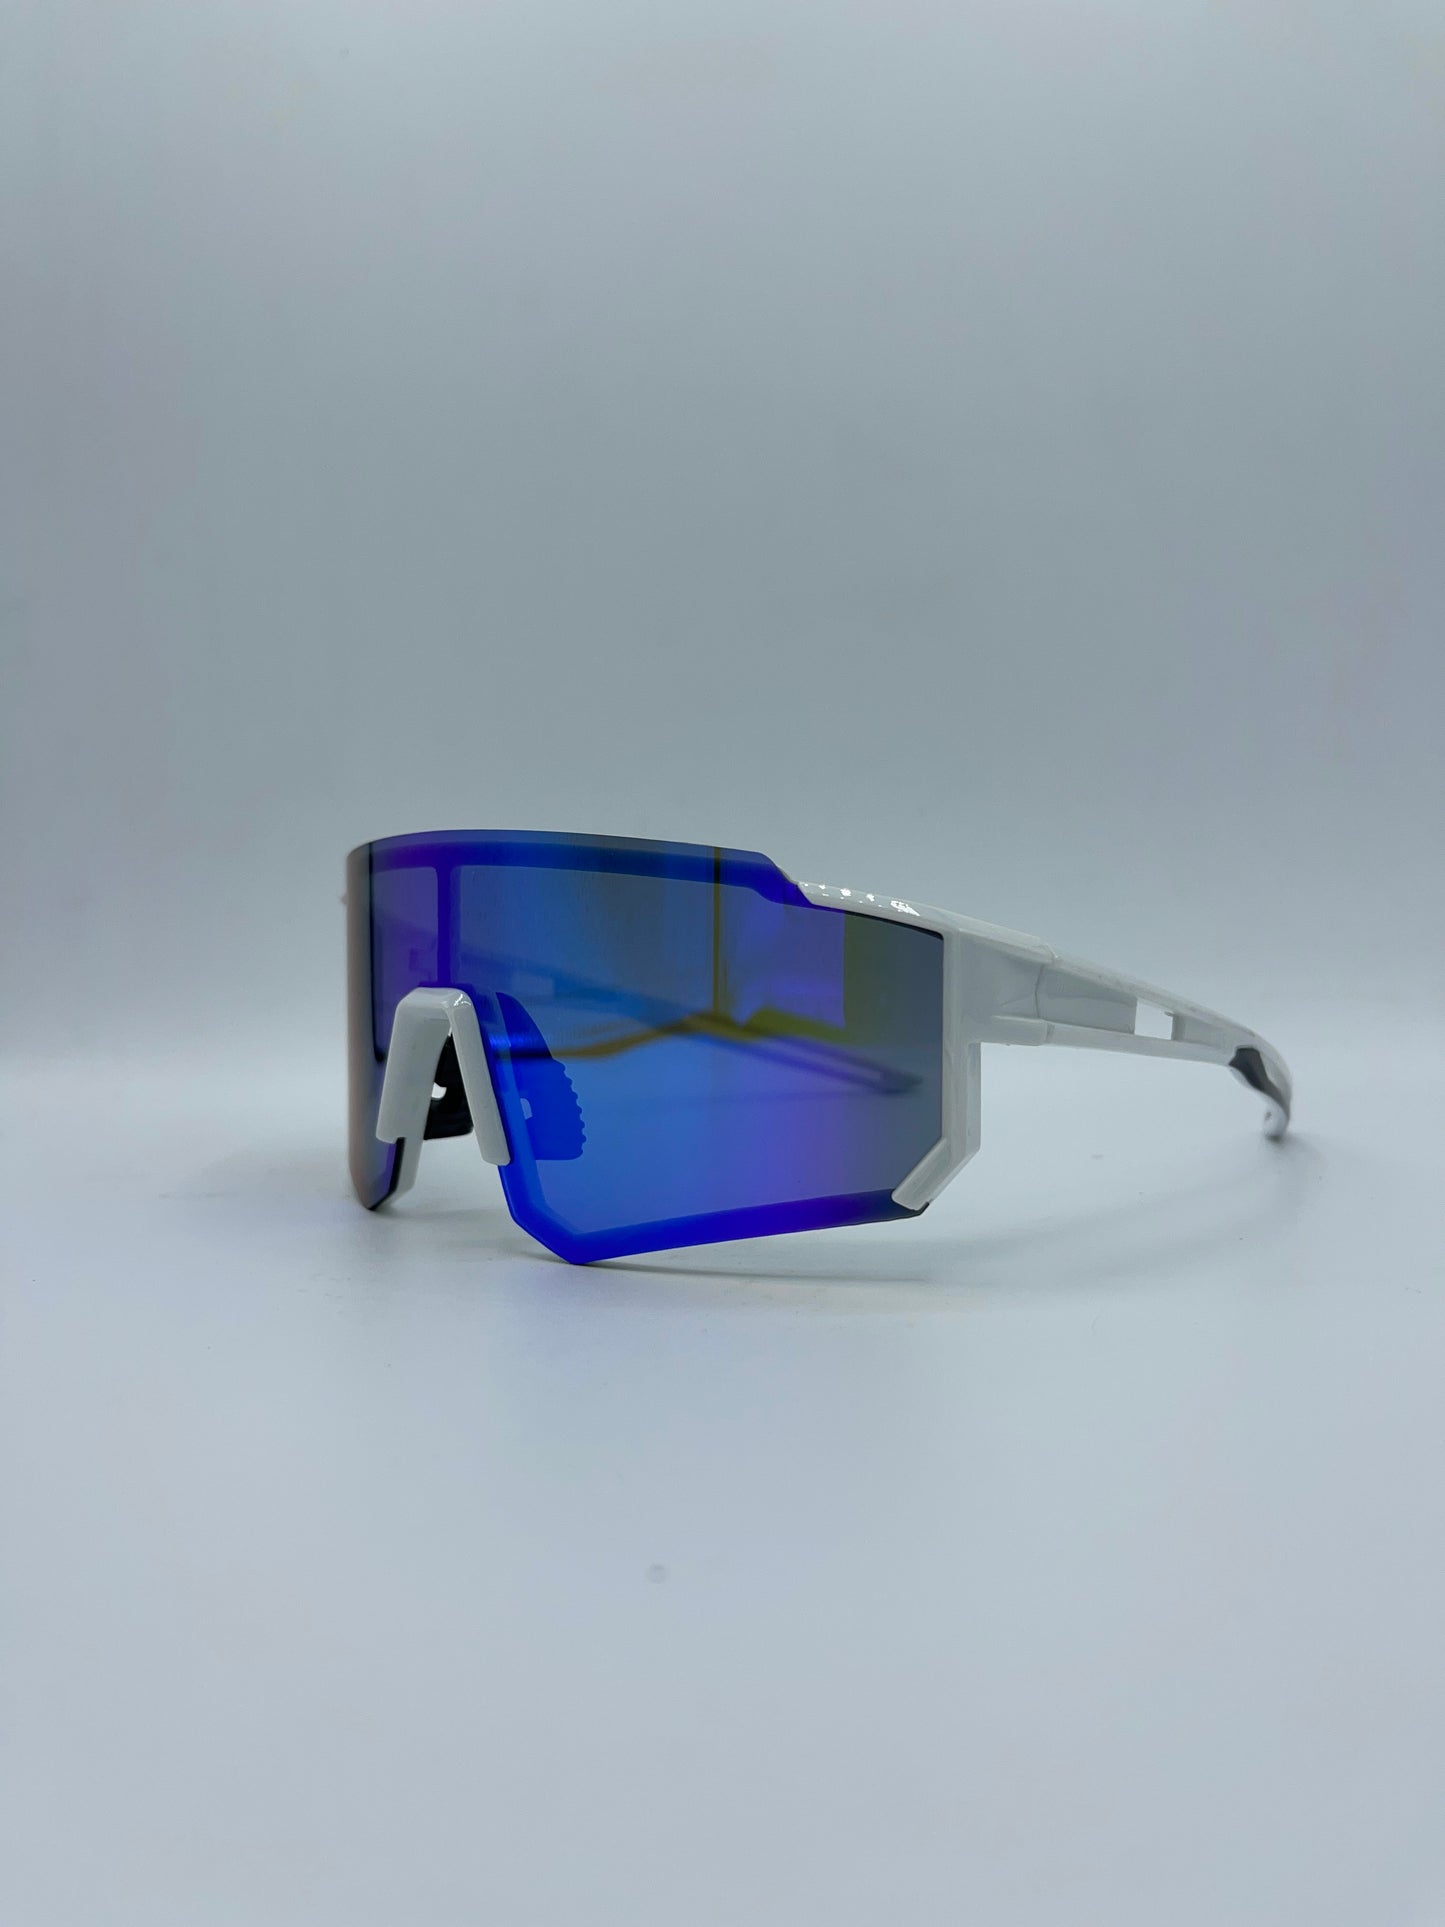 AERO Sunglasses - Shaded Green